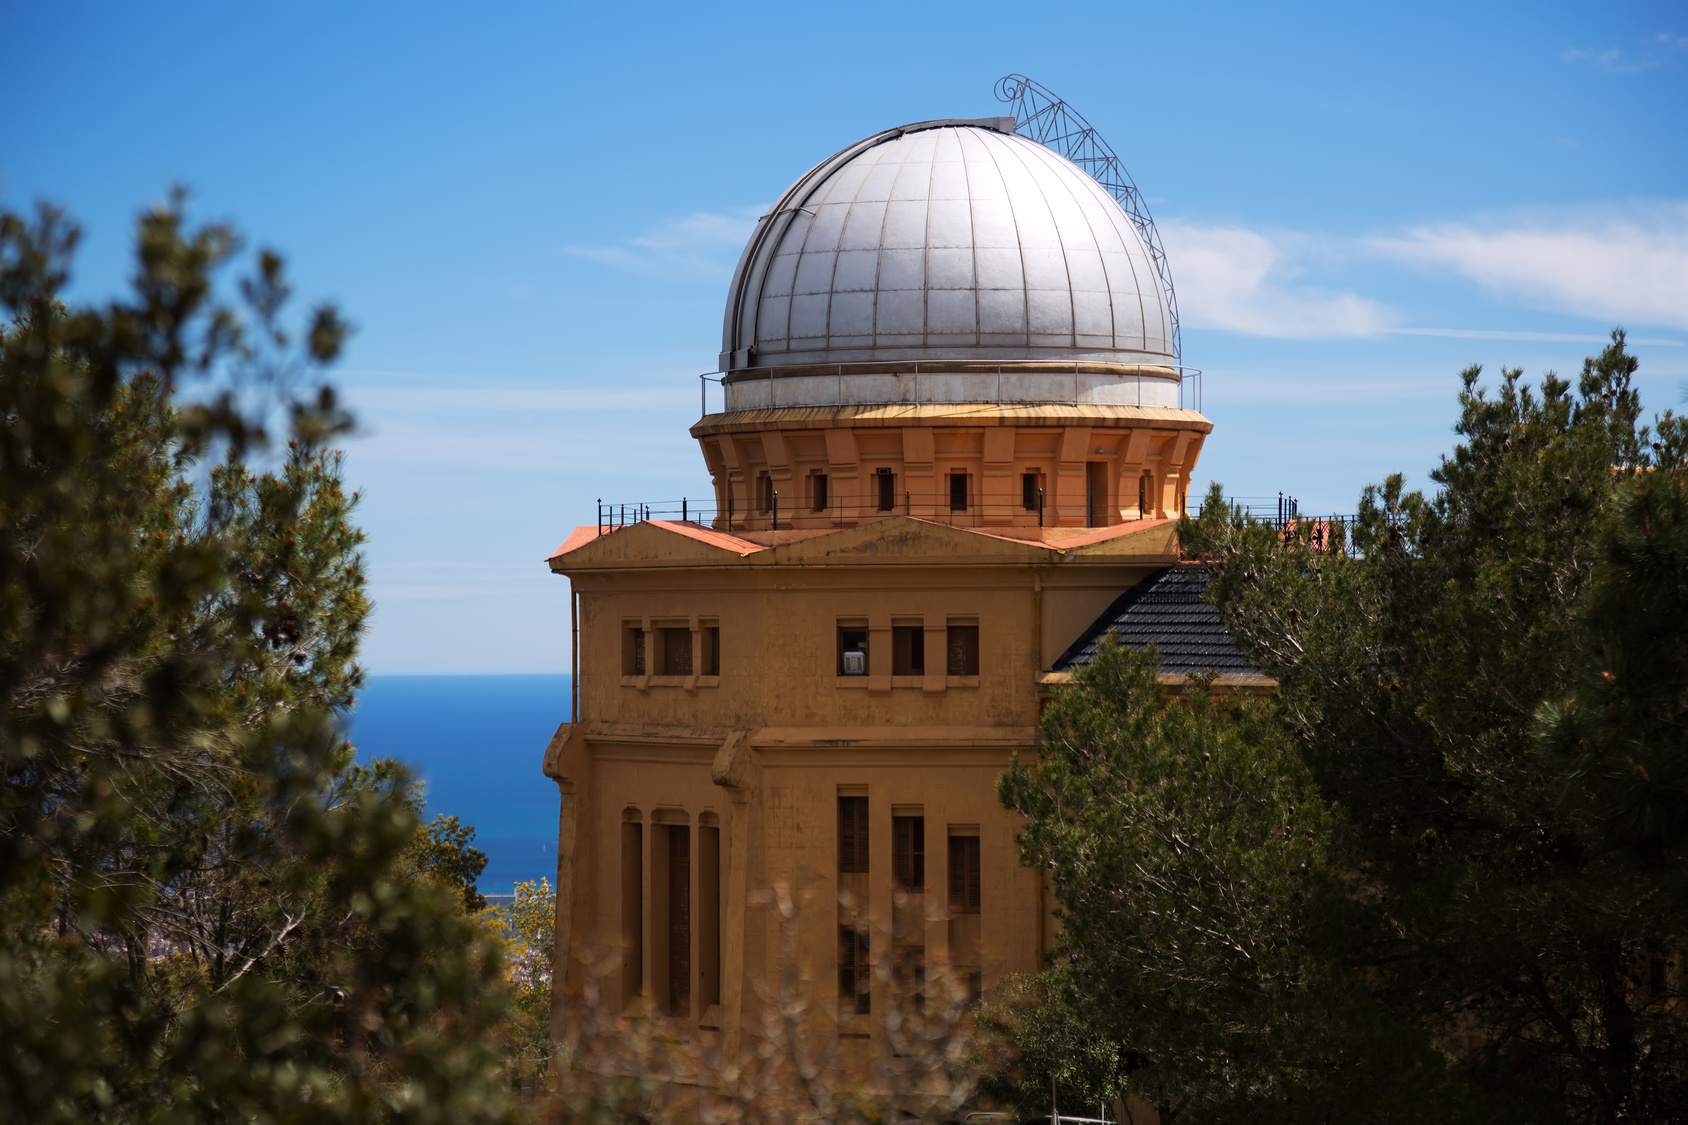 Fabra Observatory in Barcelona. Spain